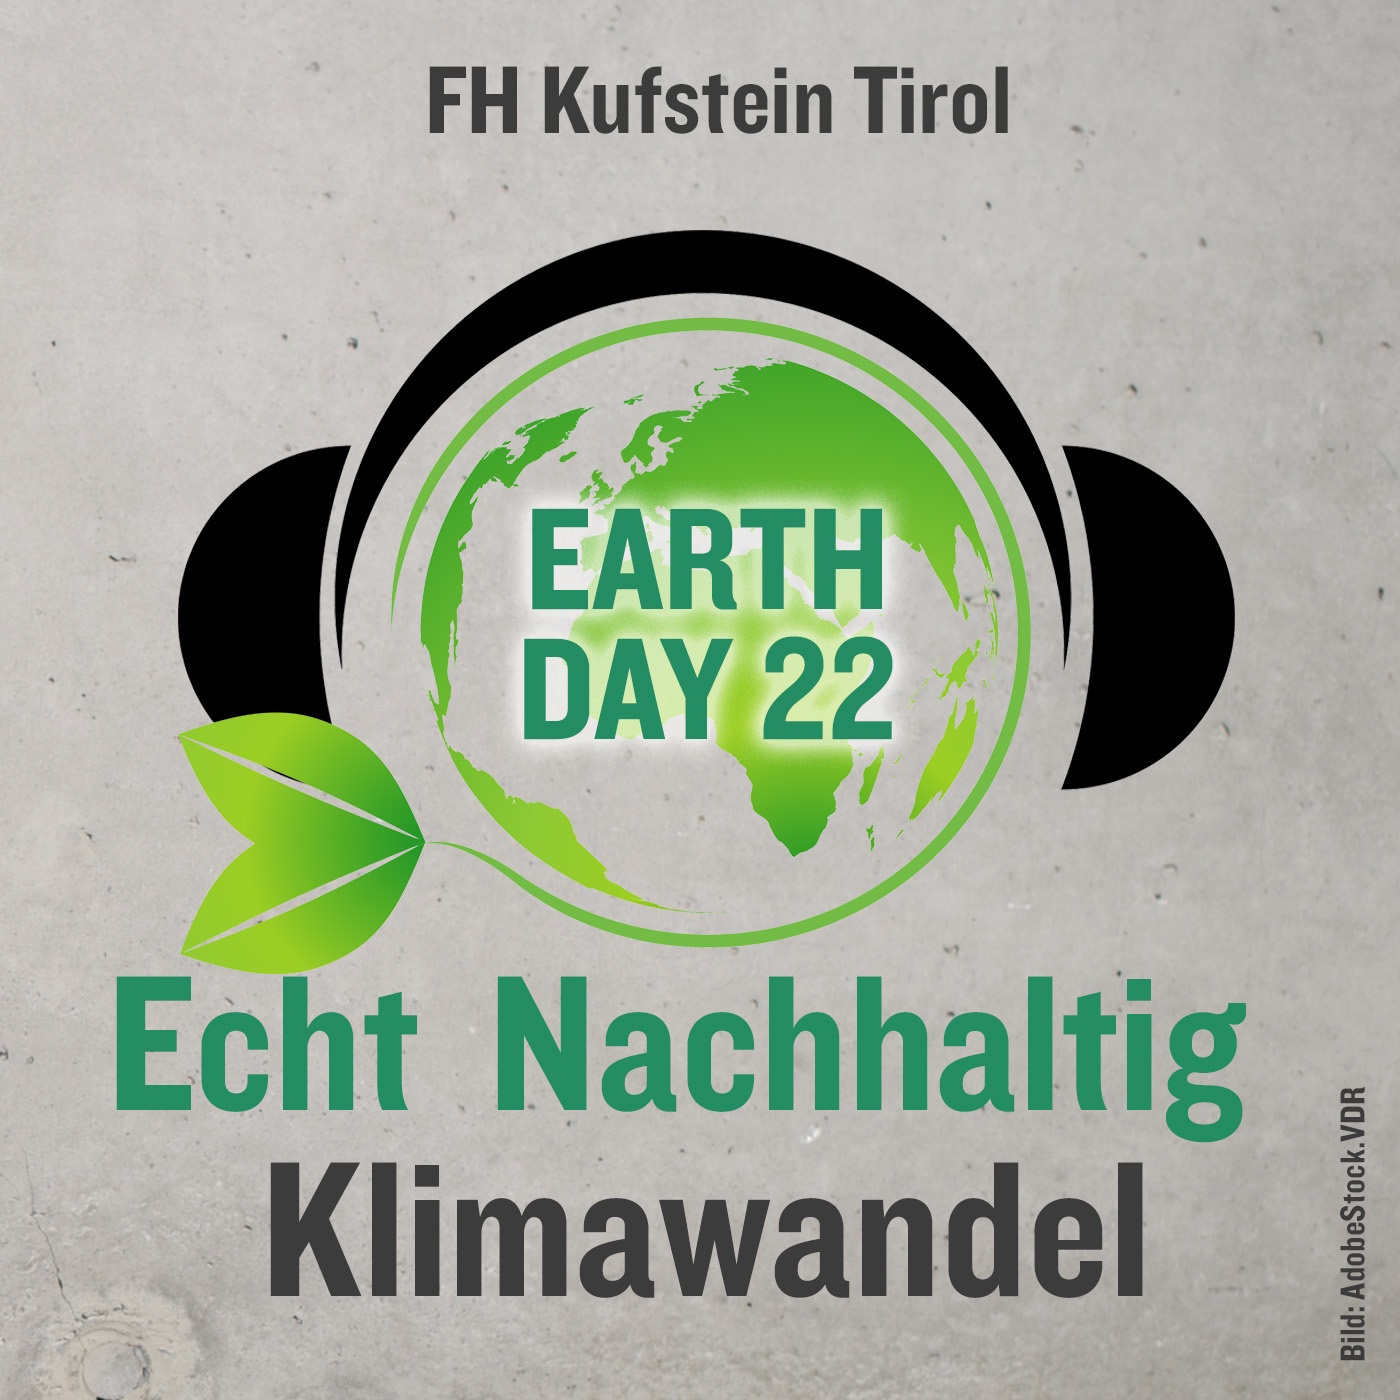 Echt Nachhaltig: EarthDay 22 - Klimawandel